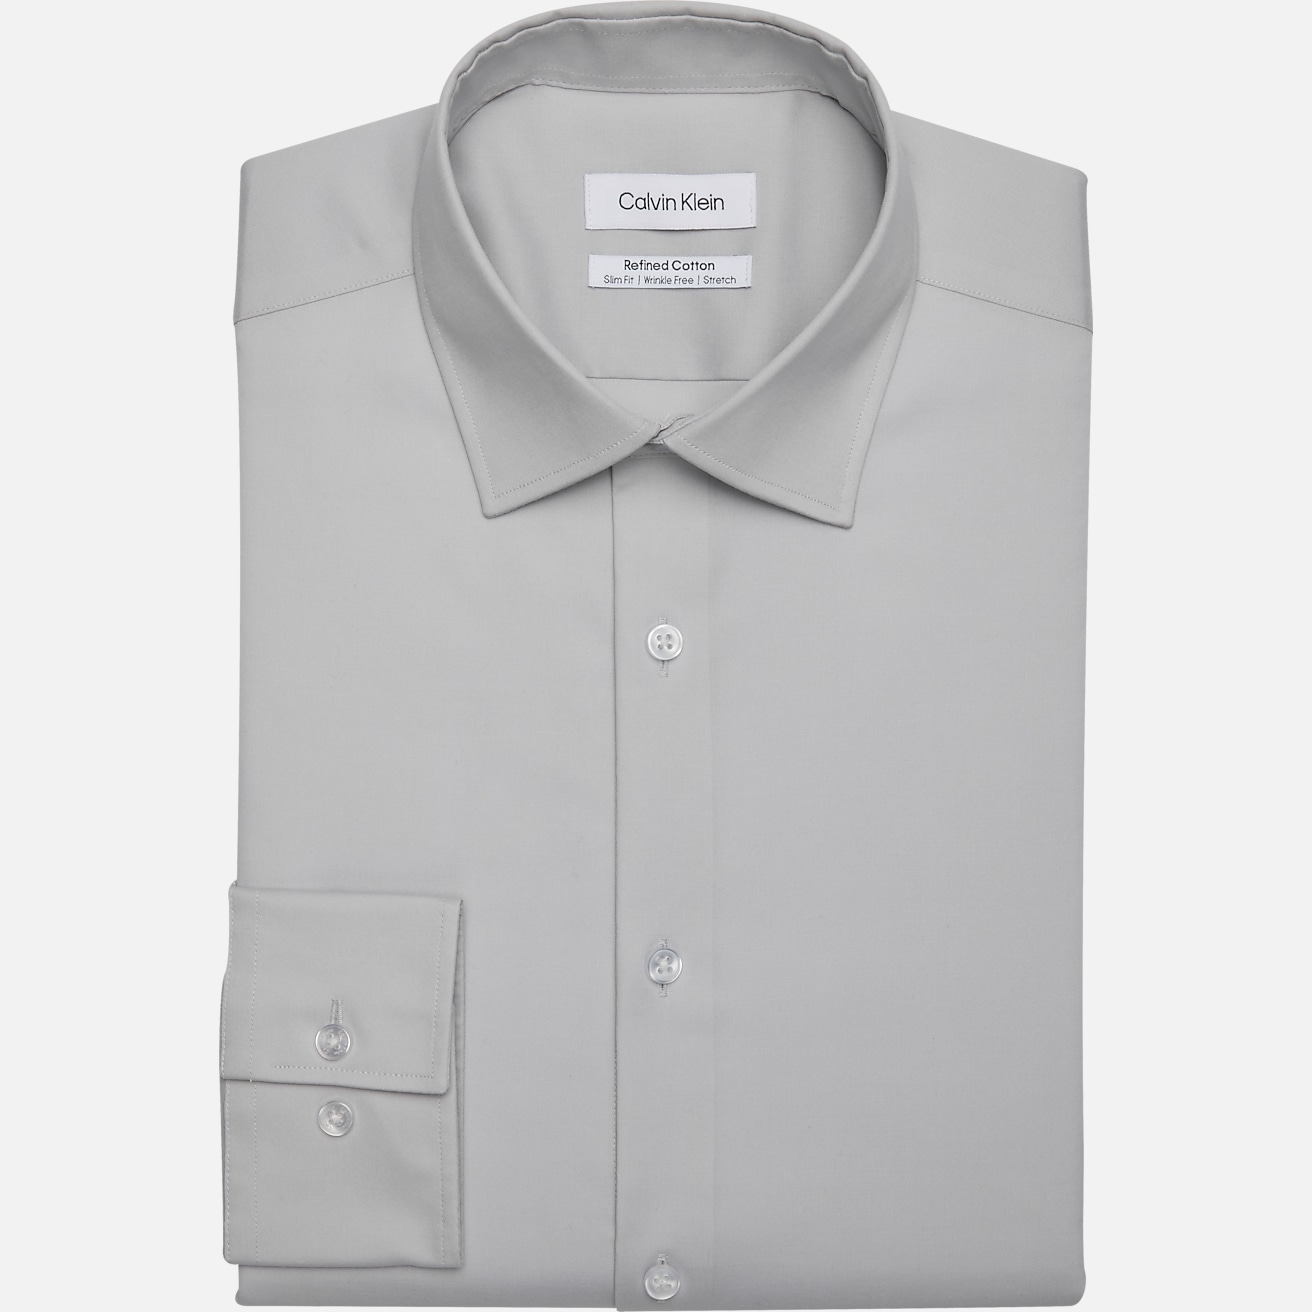 Calvin Klein Refined Cotton Slim Fit Spread Collar Dress Shirt